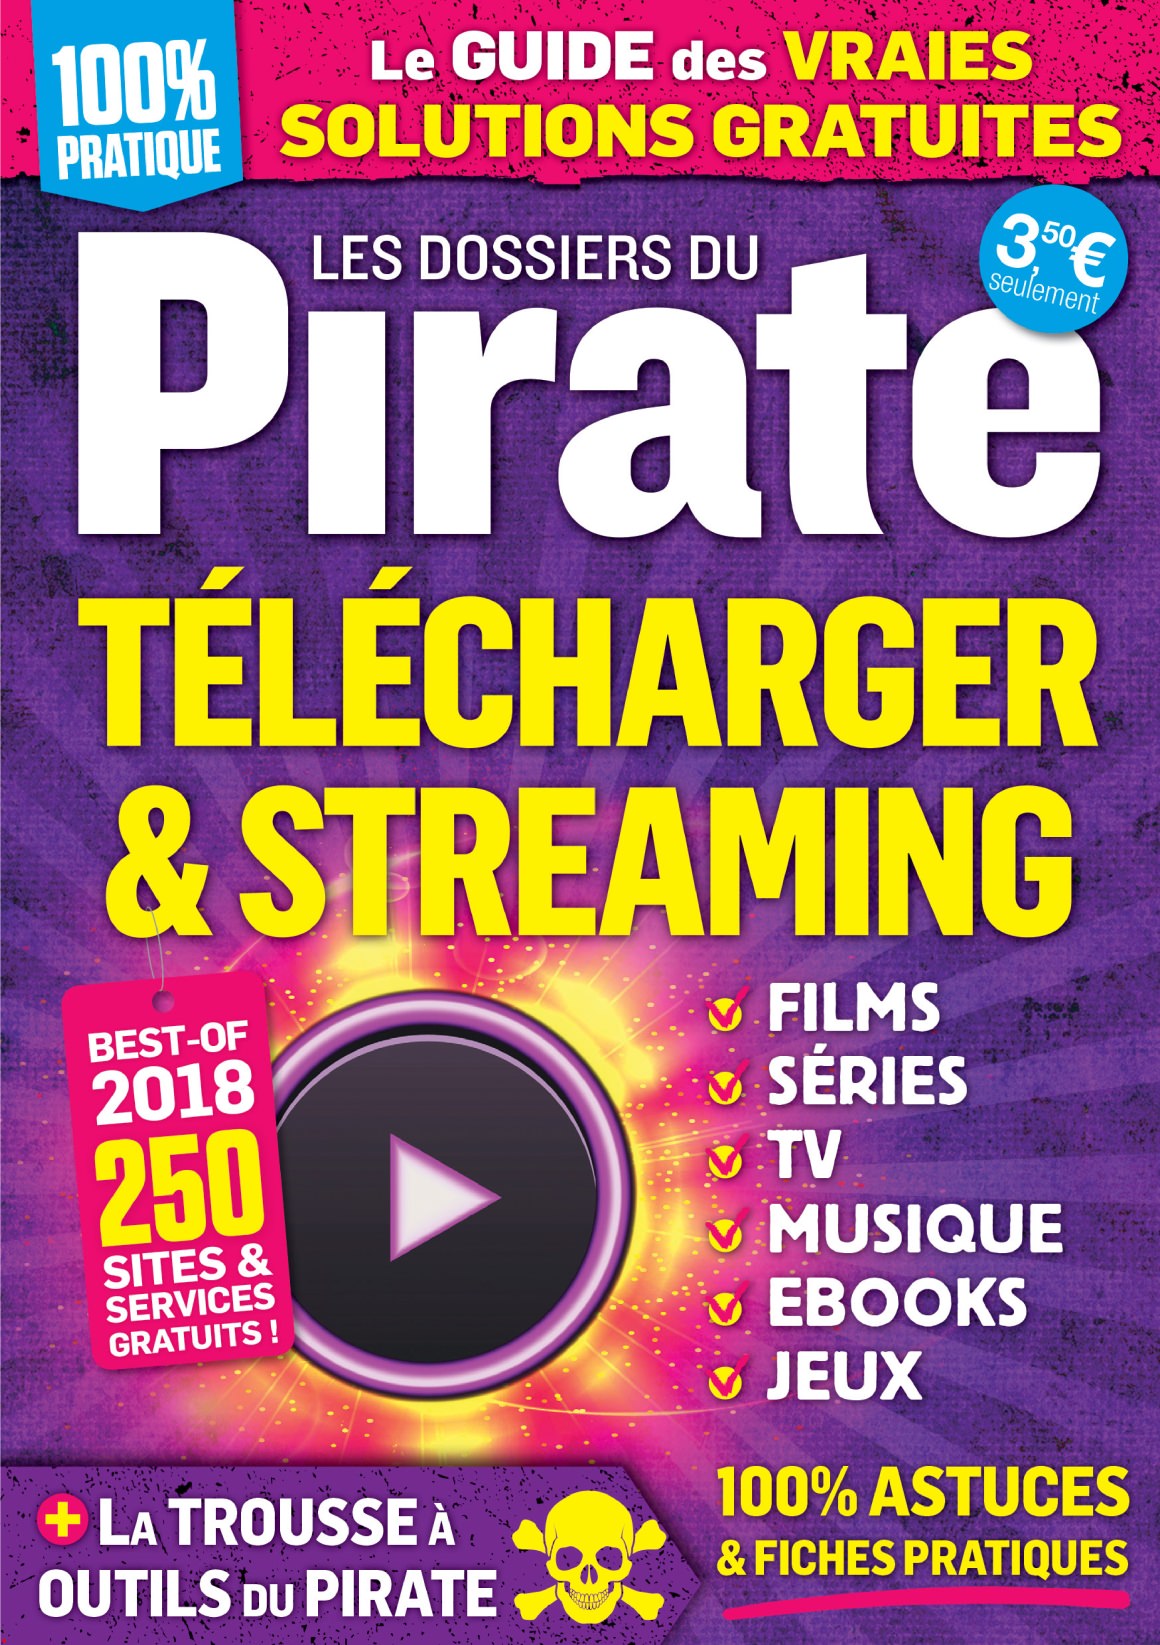 Pirate Informatique - Les Dossiers du Pirate N°17 - Octobre-Décembre 2018 PDF